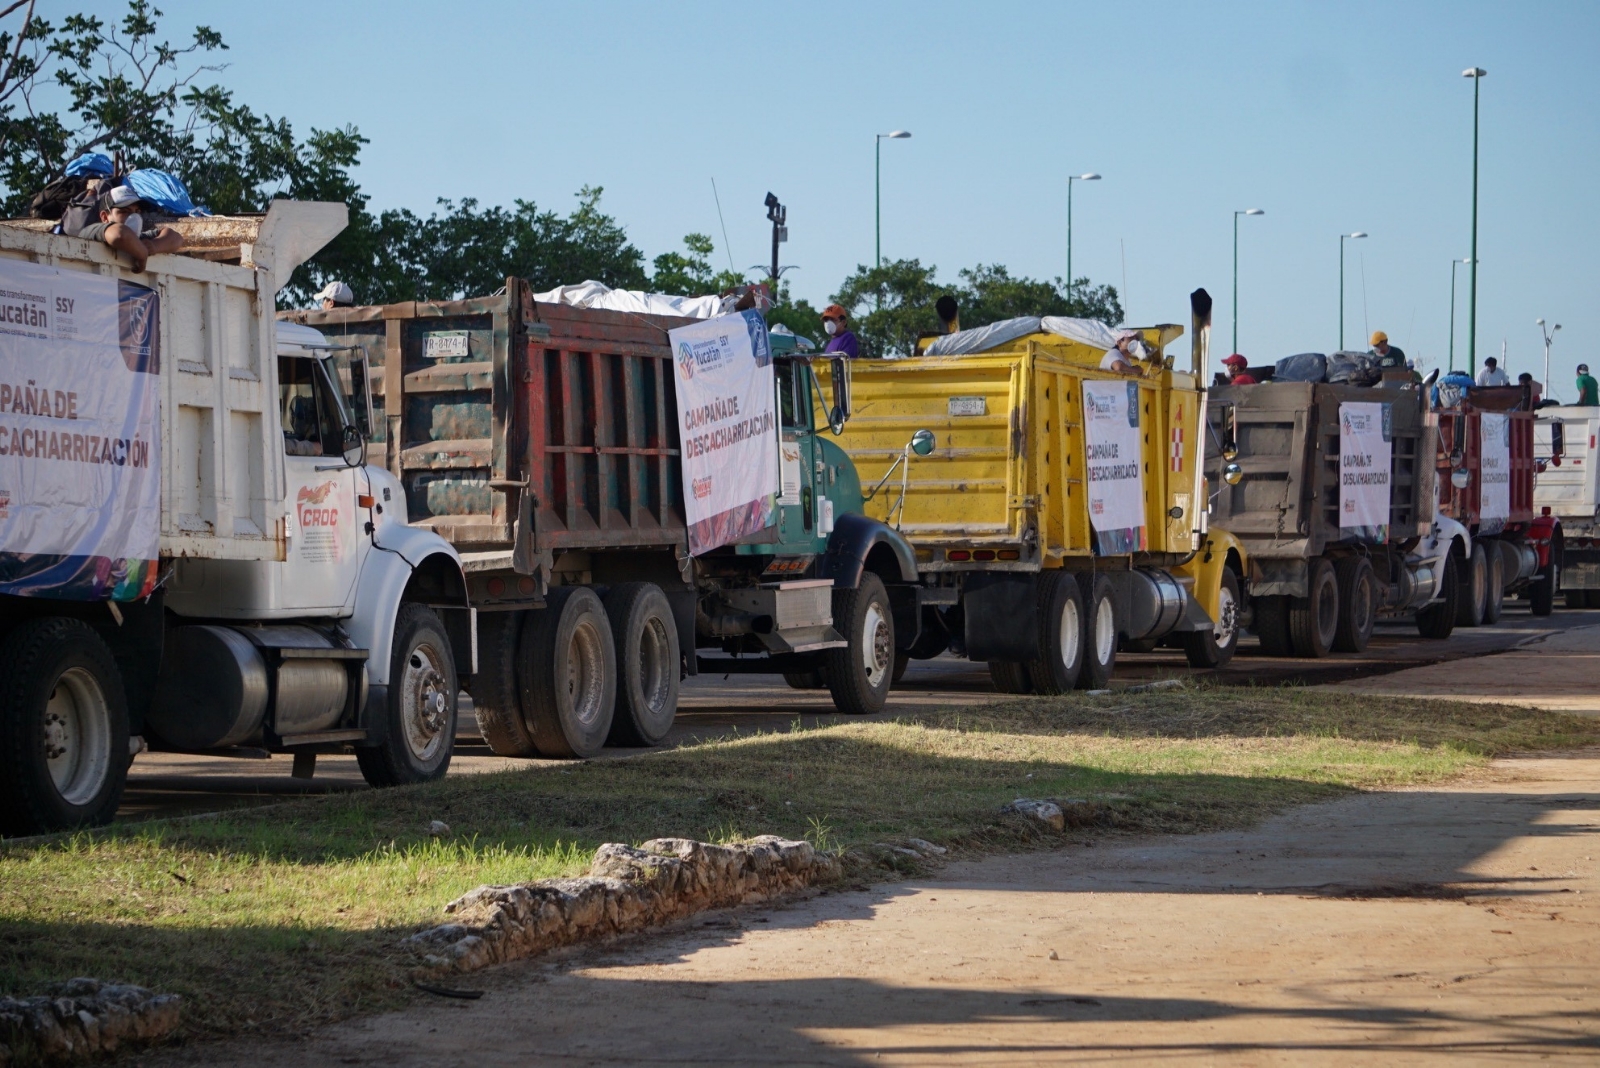 Campaña de deschatarrización en Mérida genera quejas; hay más de 400 esquinas llenas de basura